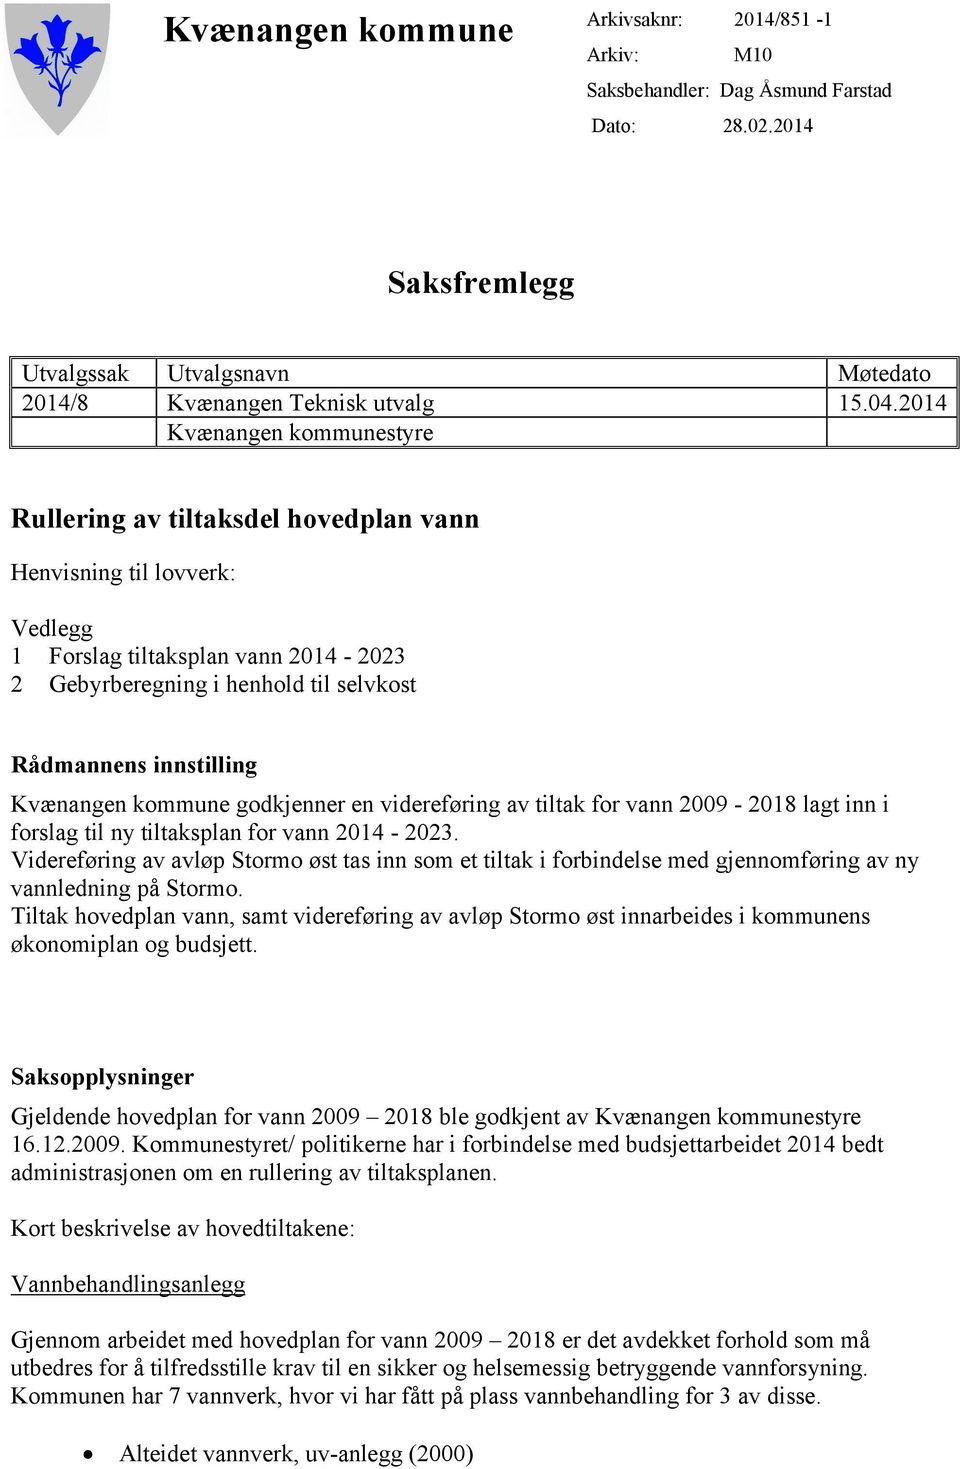 Kvænangen kommune godkjenner en videreføring av tiltak for vann 2009-2018 lagt inn i forslag til ny tiltaksplan for vann 2014-2023.